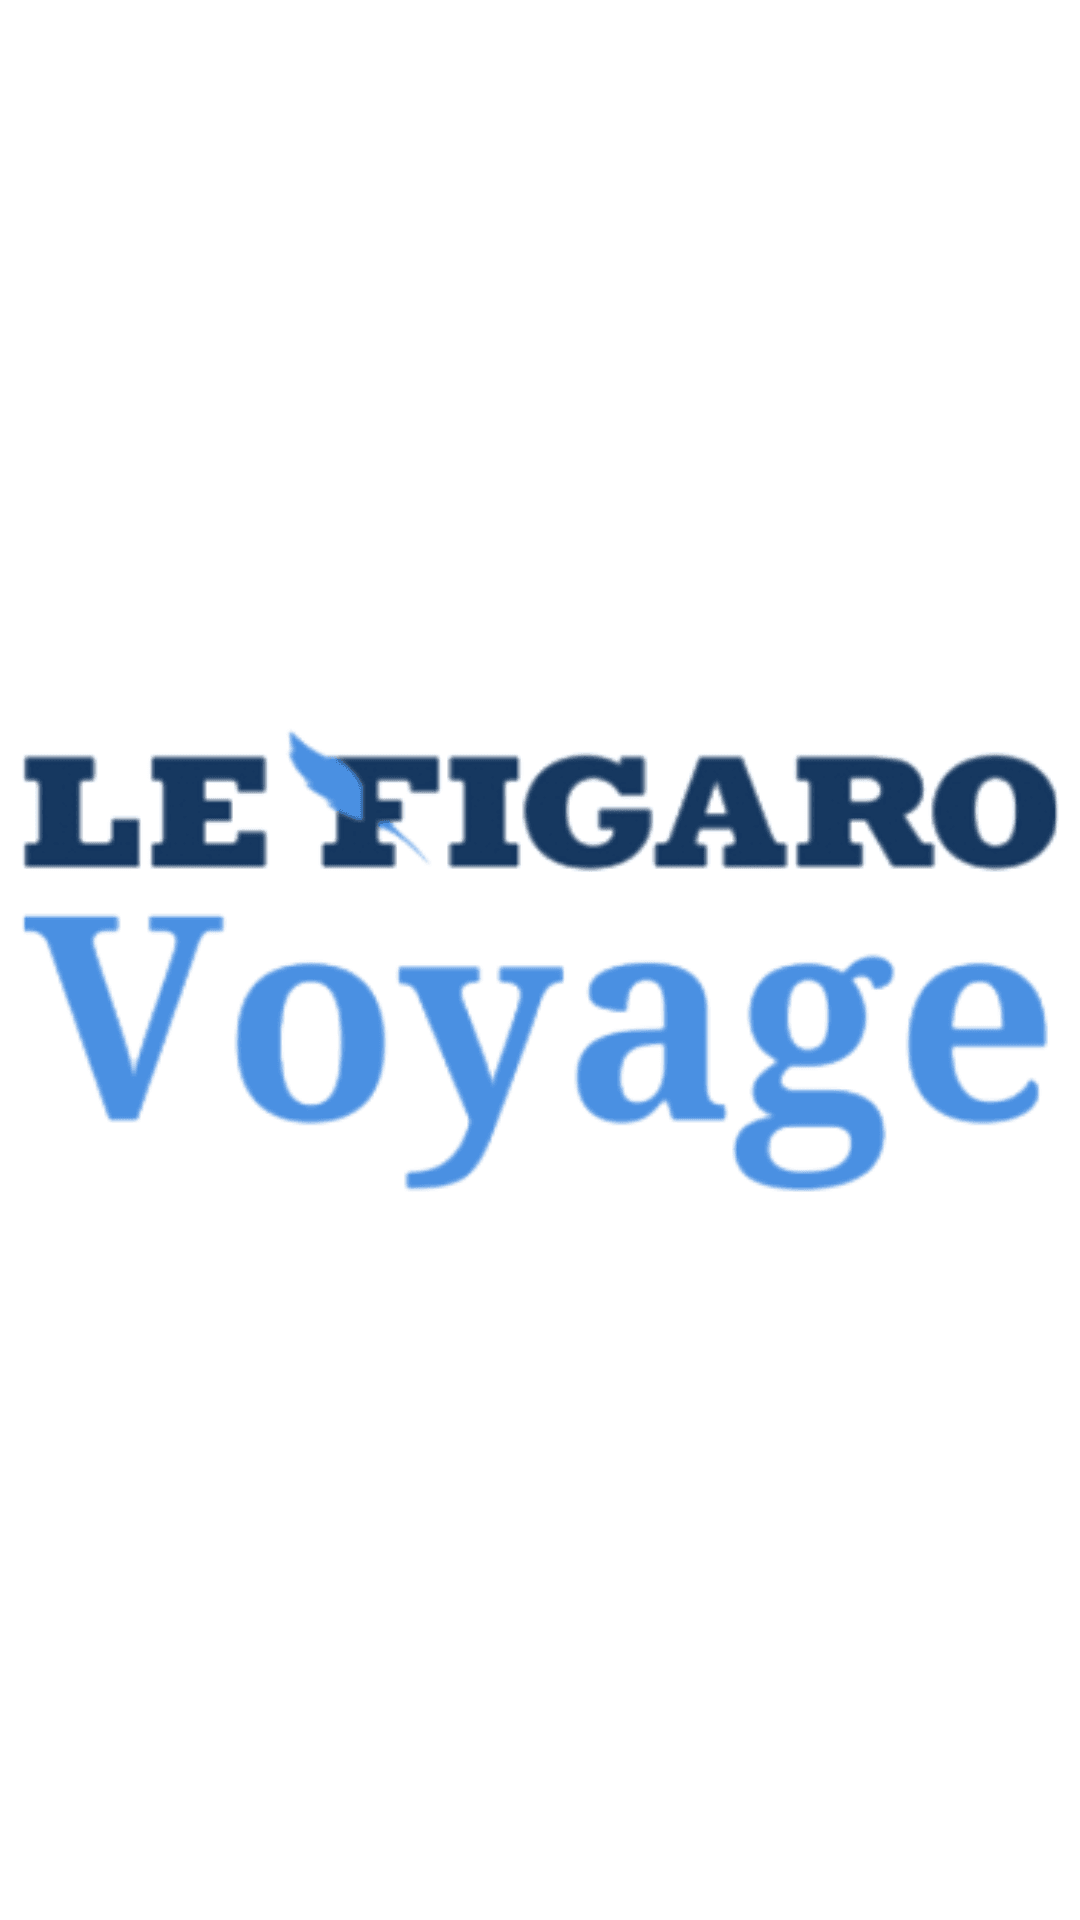 660/figaro_voyage.png